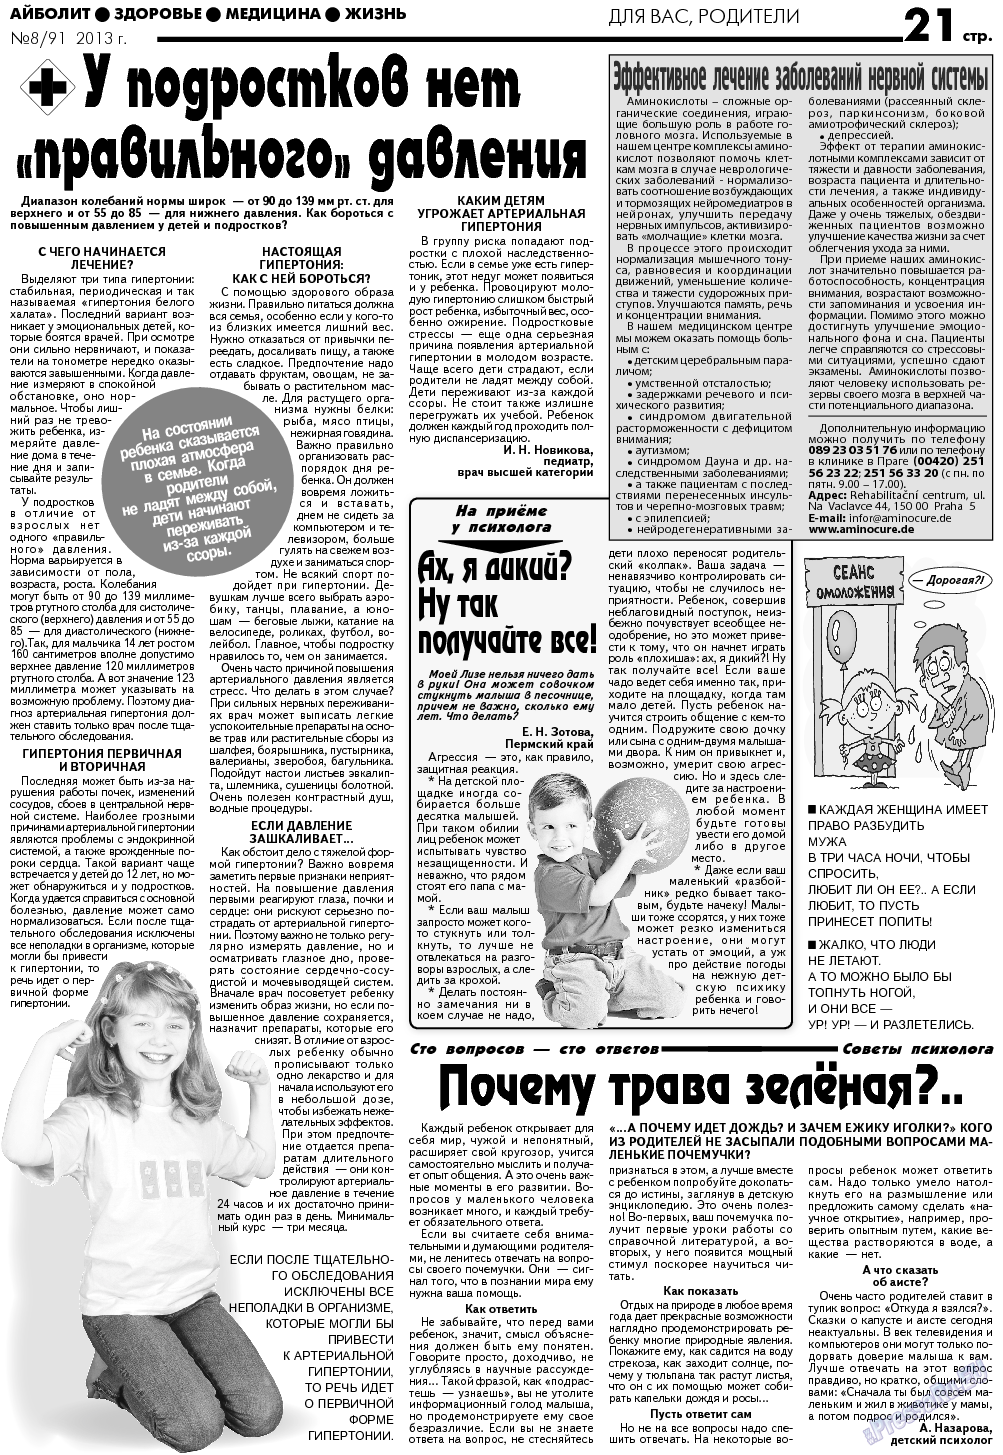 АйБолит, газета. 2013 №8 стр.21